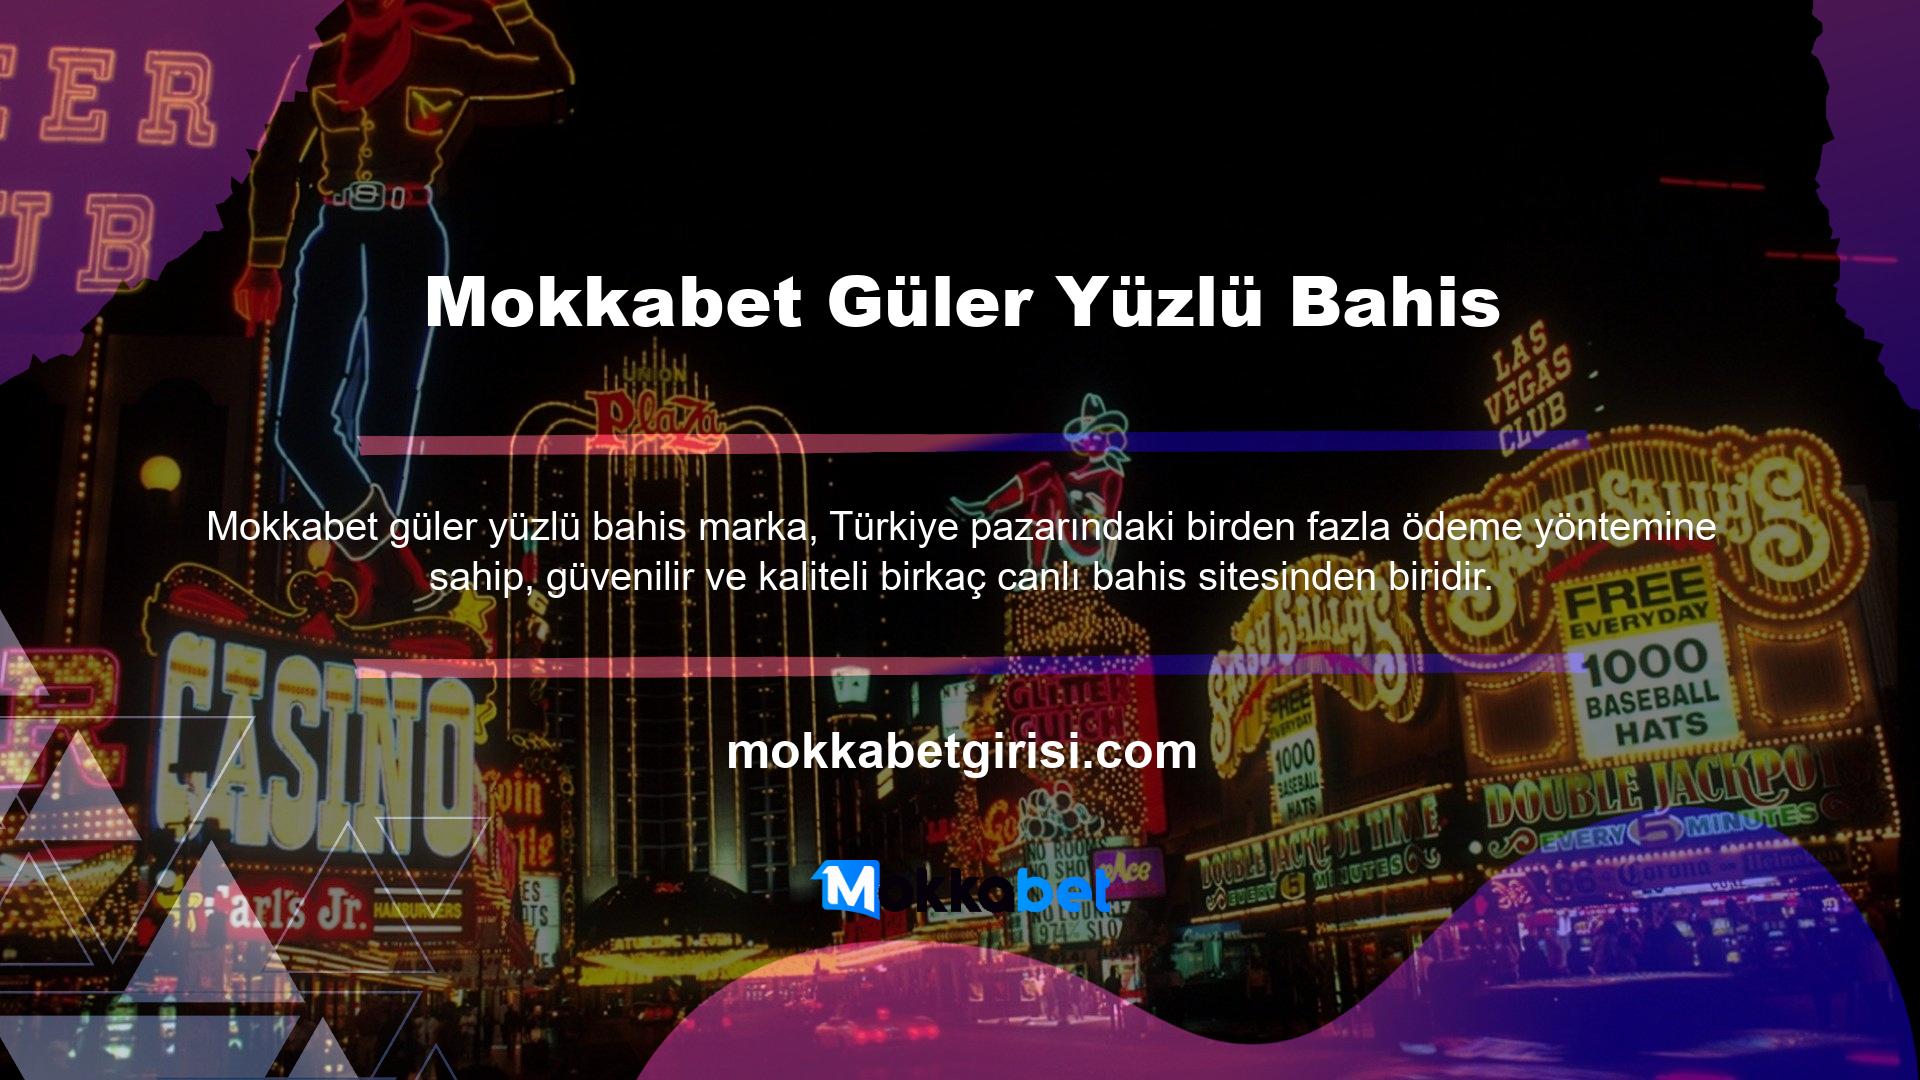 Kullanıcılarına bahis ve casino faaliyetleri sunan en tanınmış sitelerden biri Mokkabet